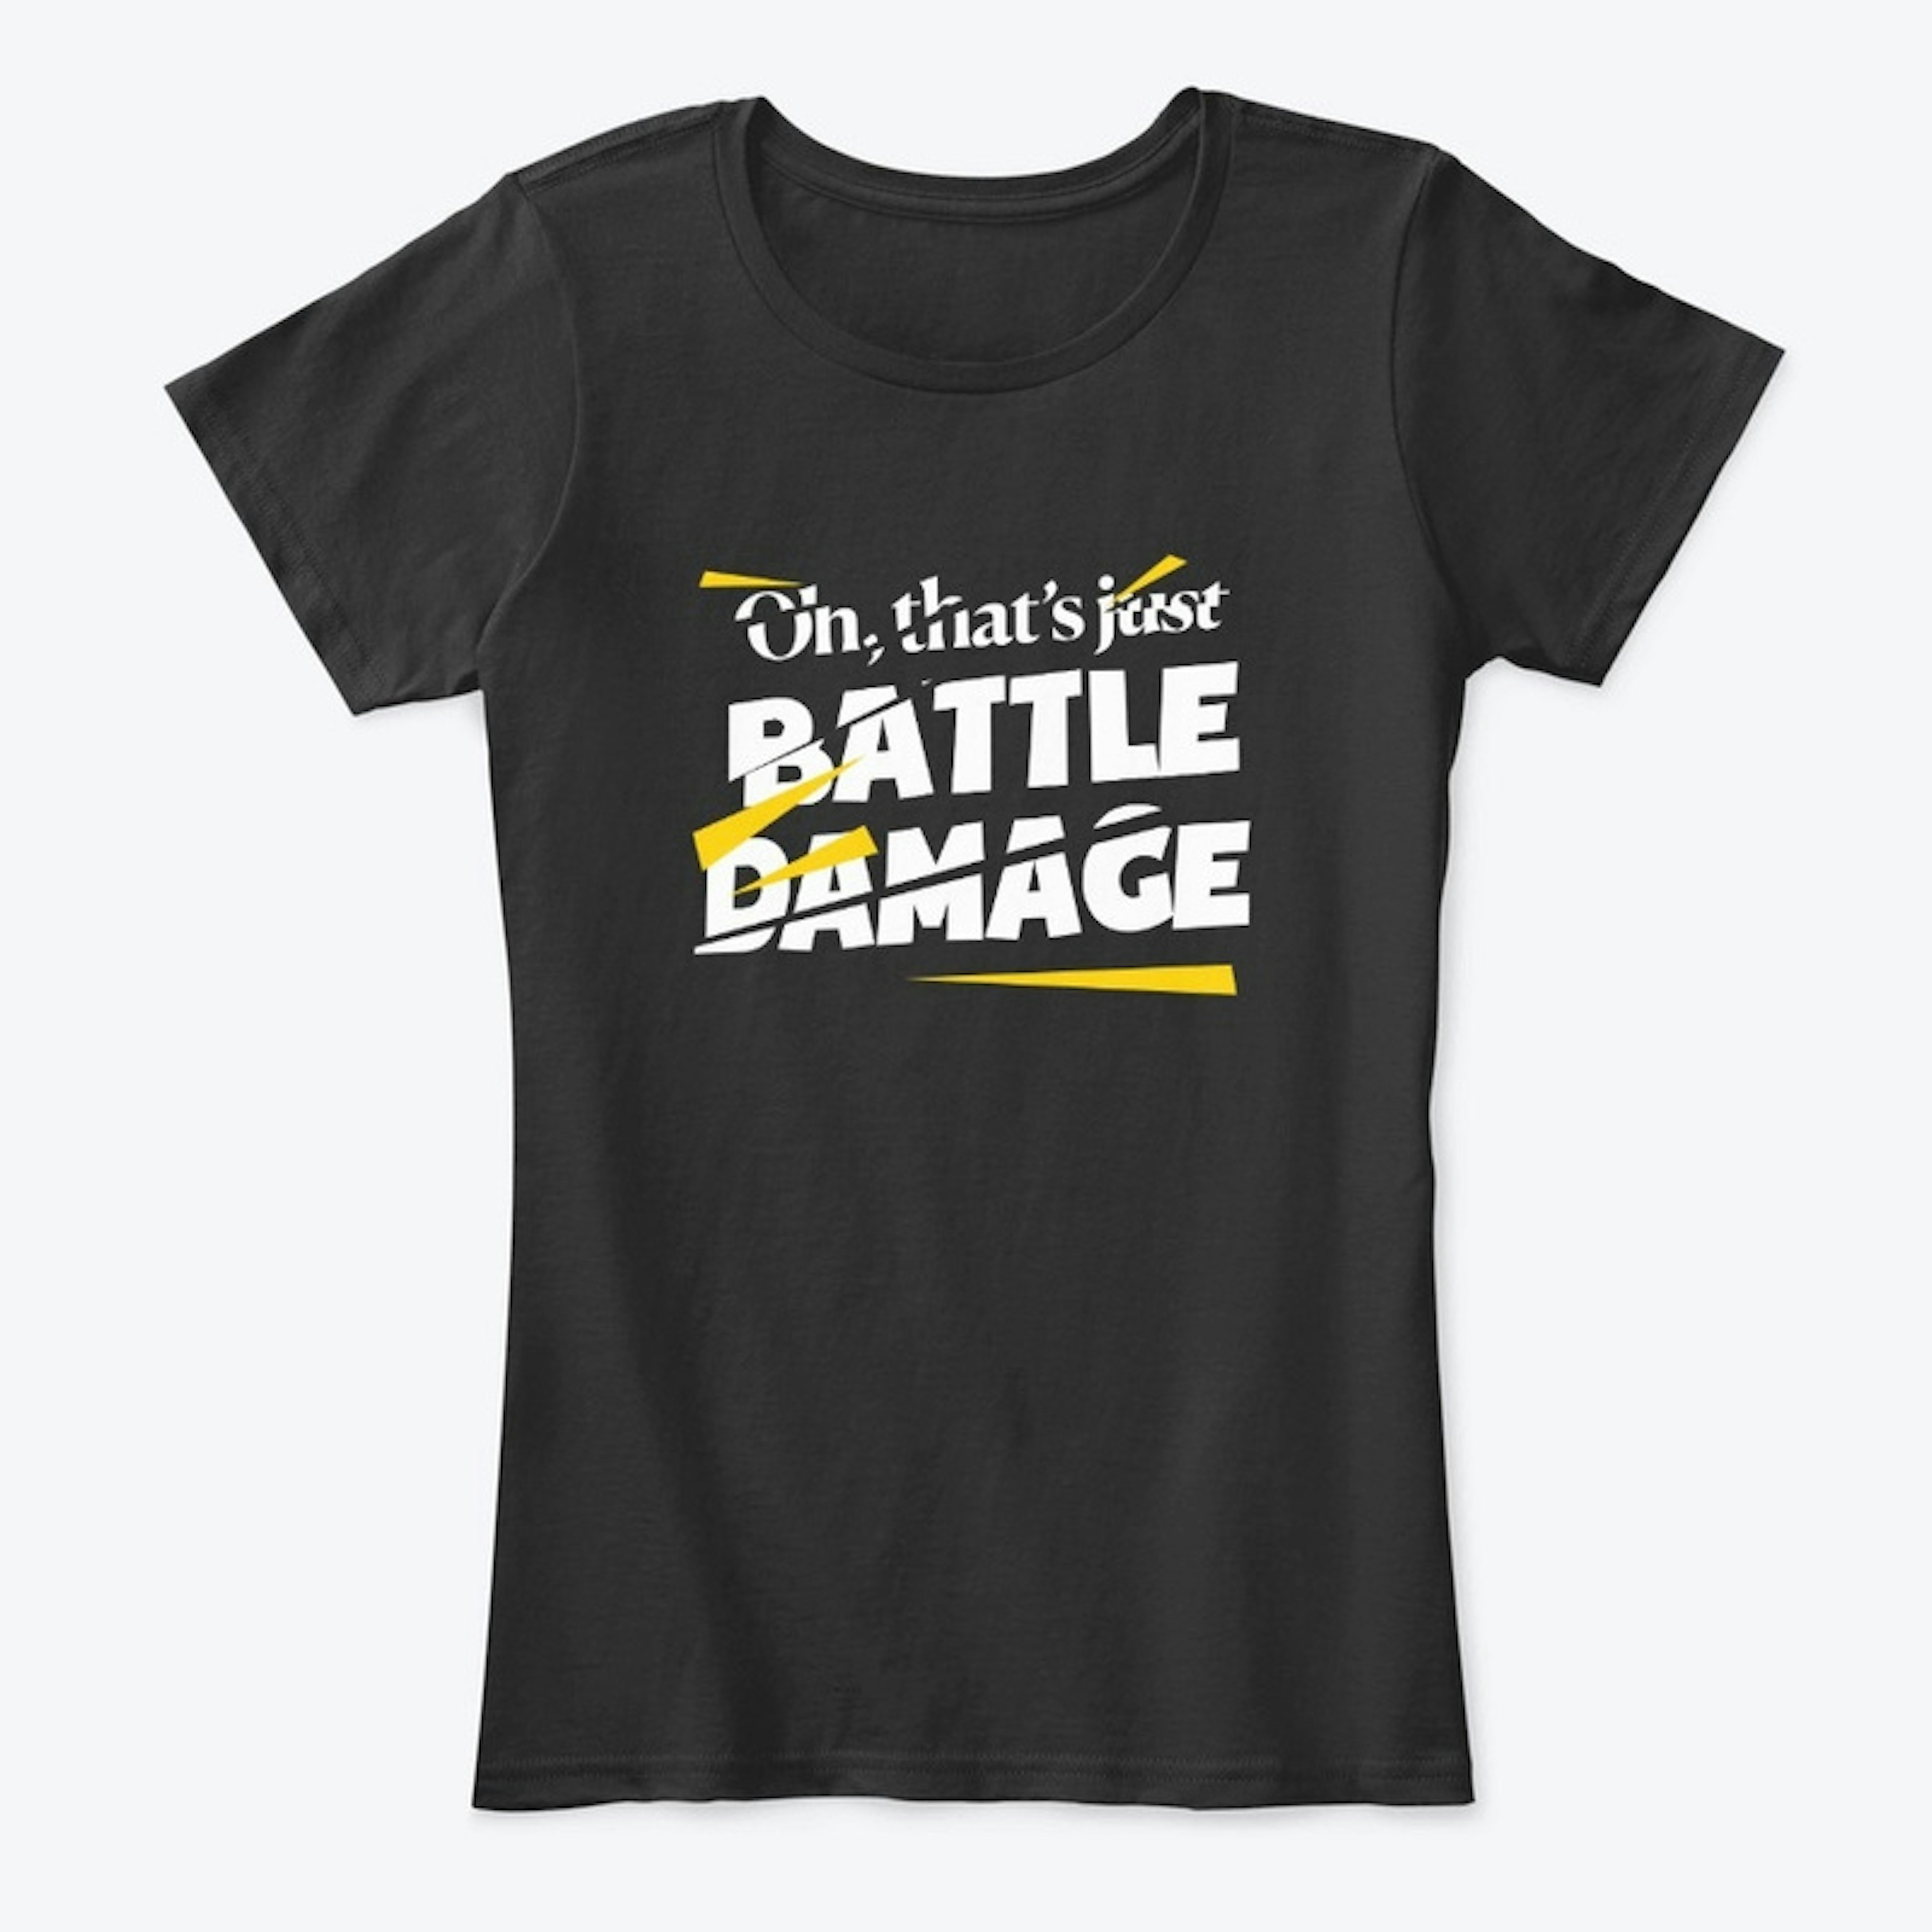 Oh it's just battle damage